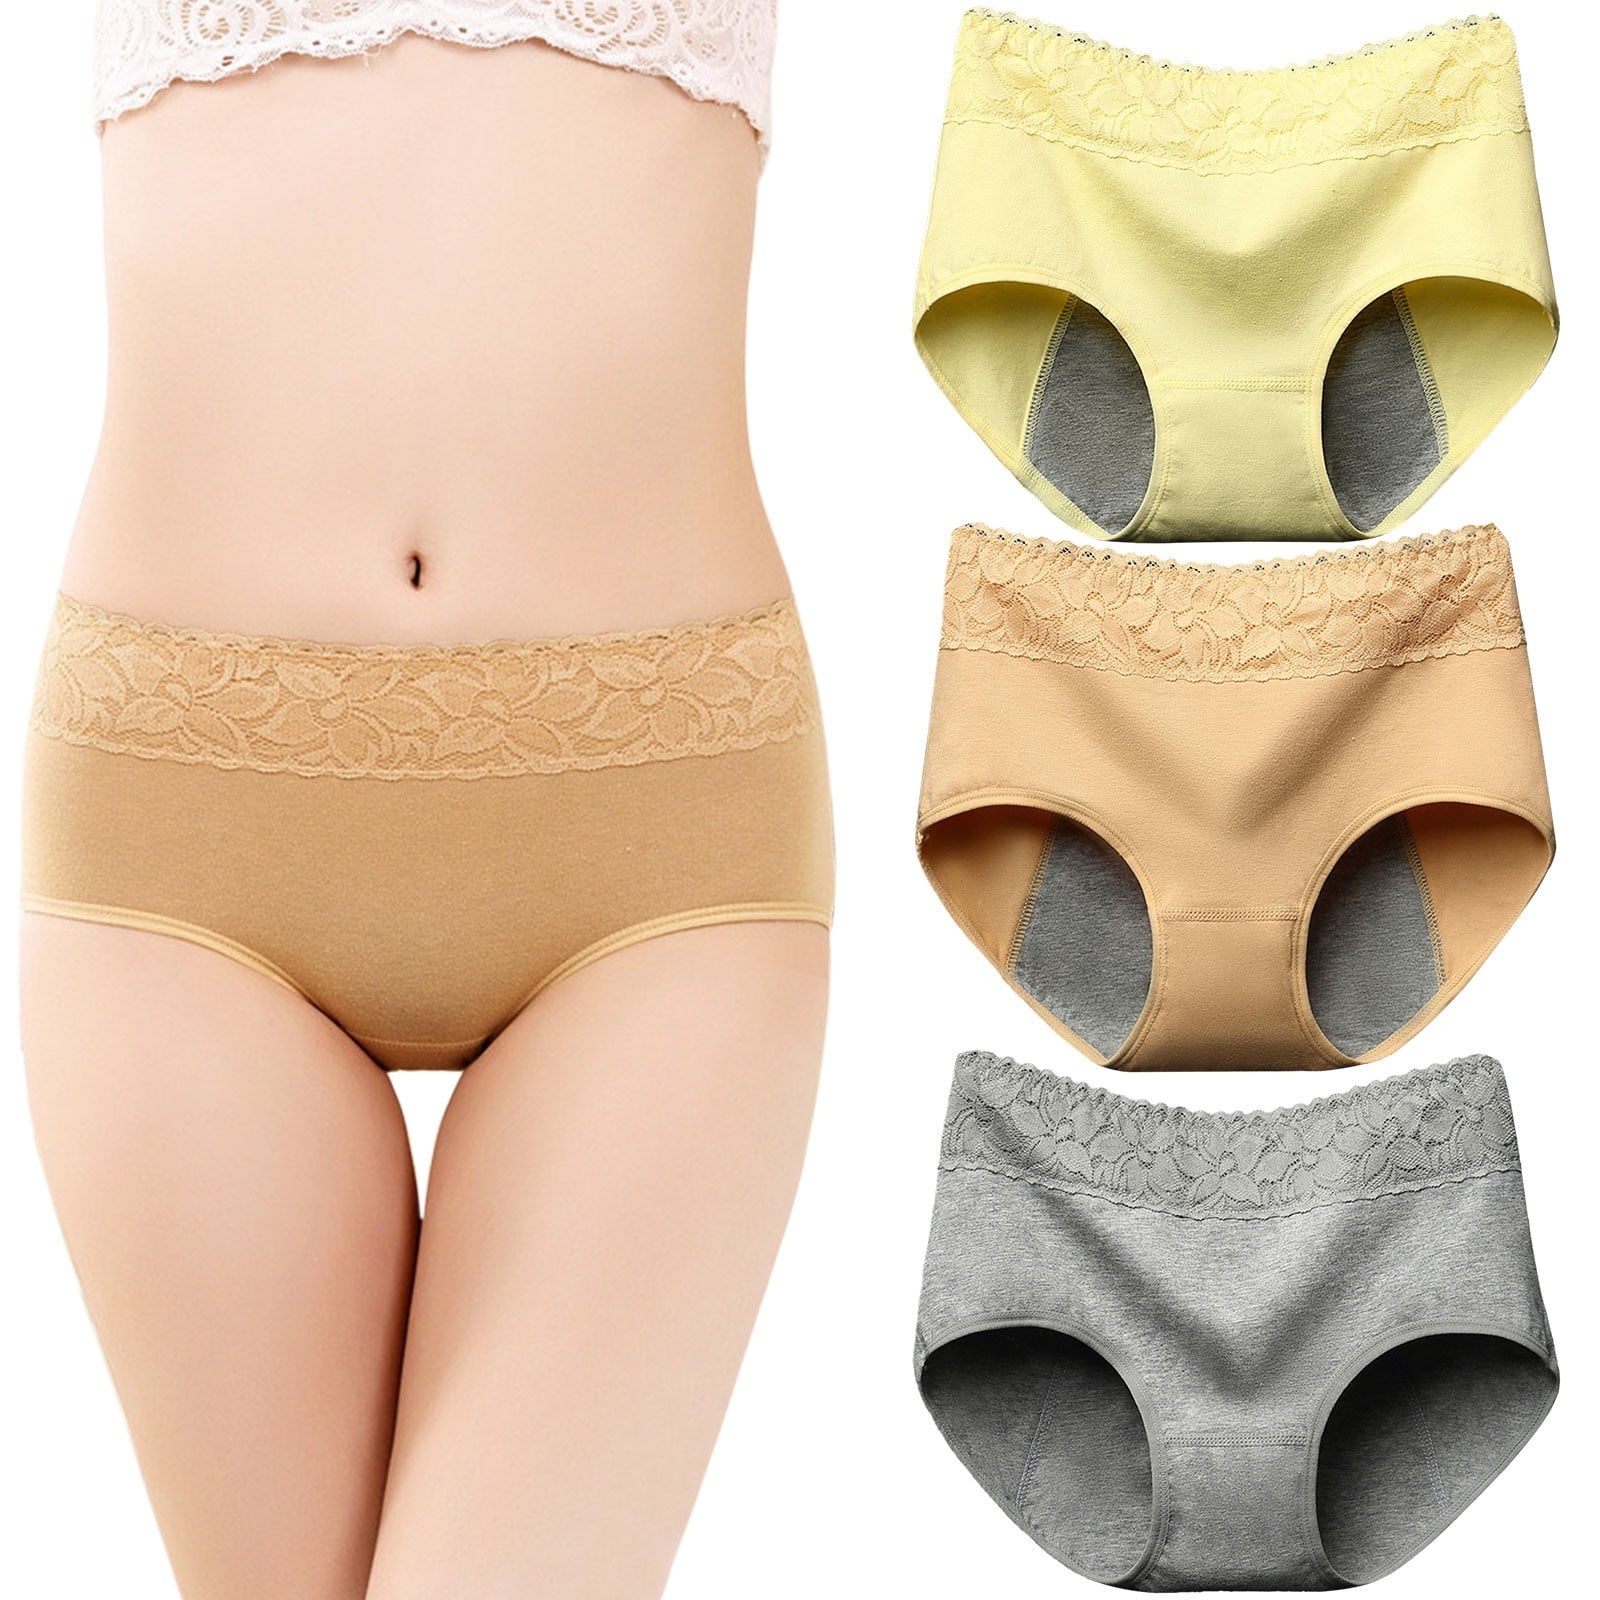 Rovga Women Panties 3 Pack Menstrual Underwearlace Panties Briefs